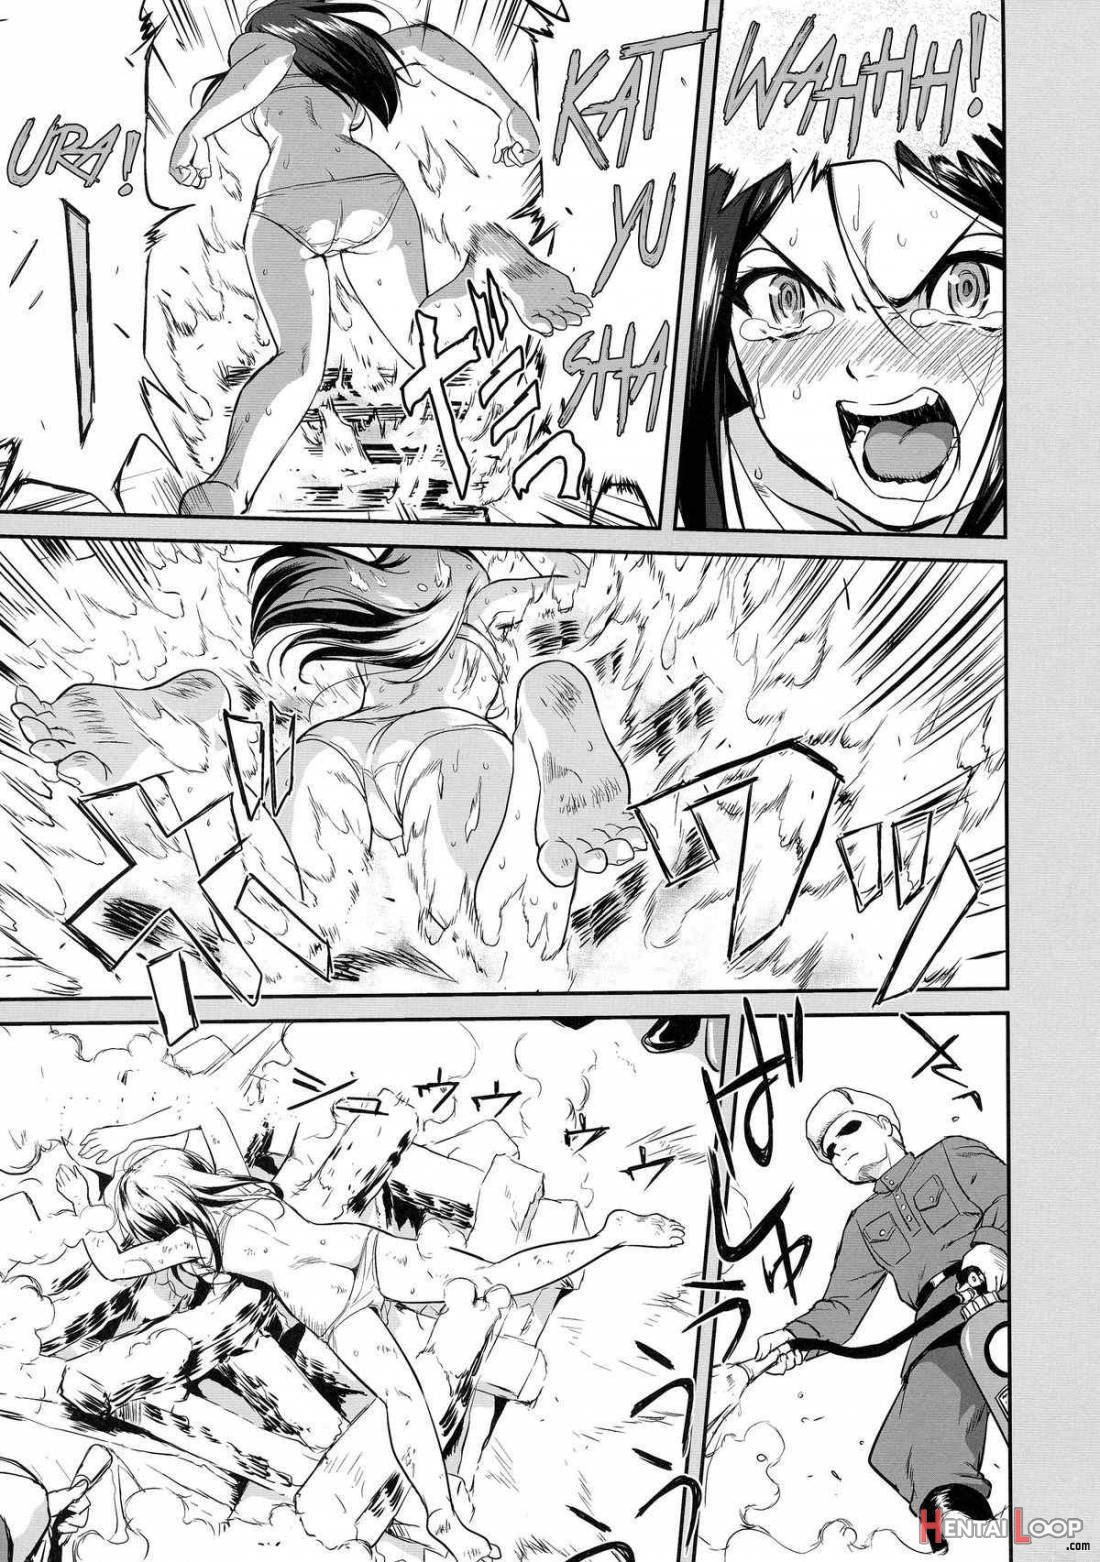 Yukiyukite Senshadou Battle of Pravda page 12